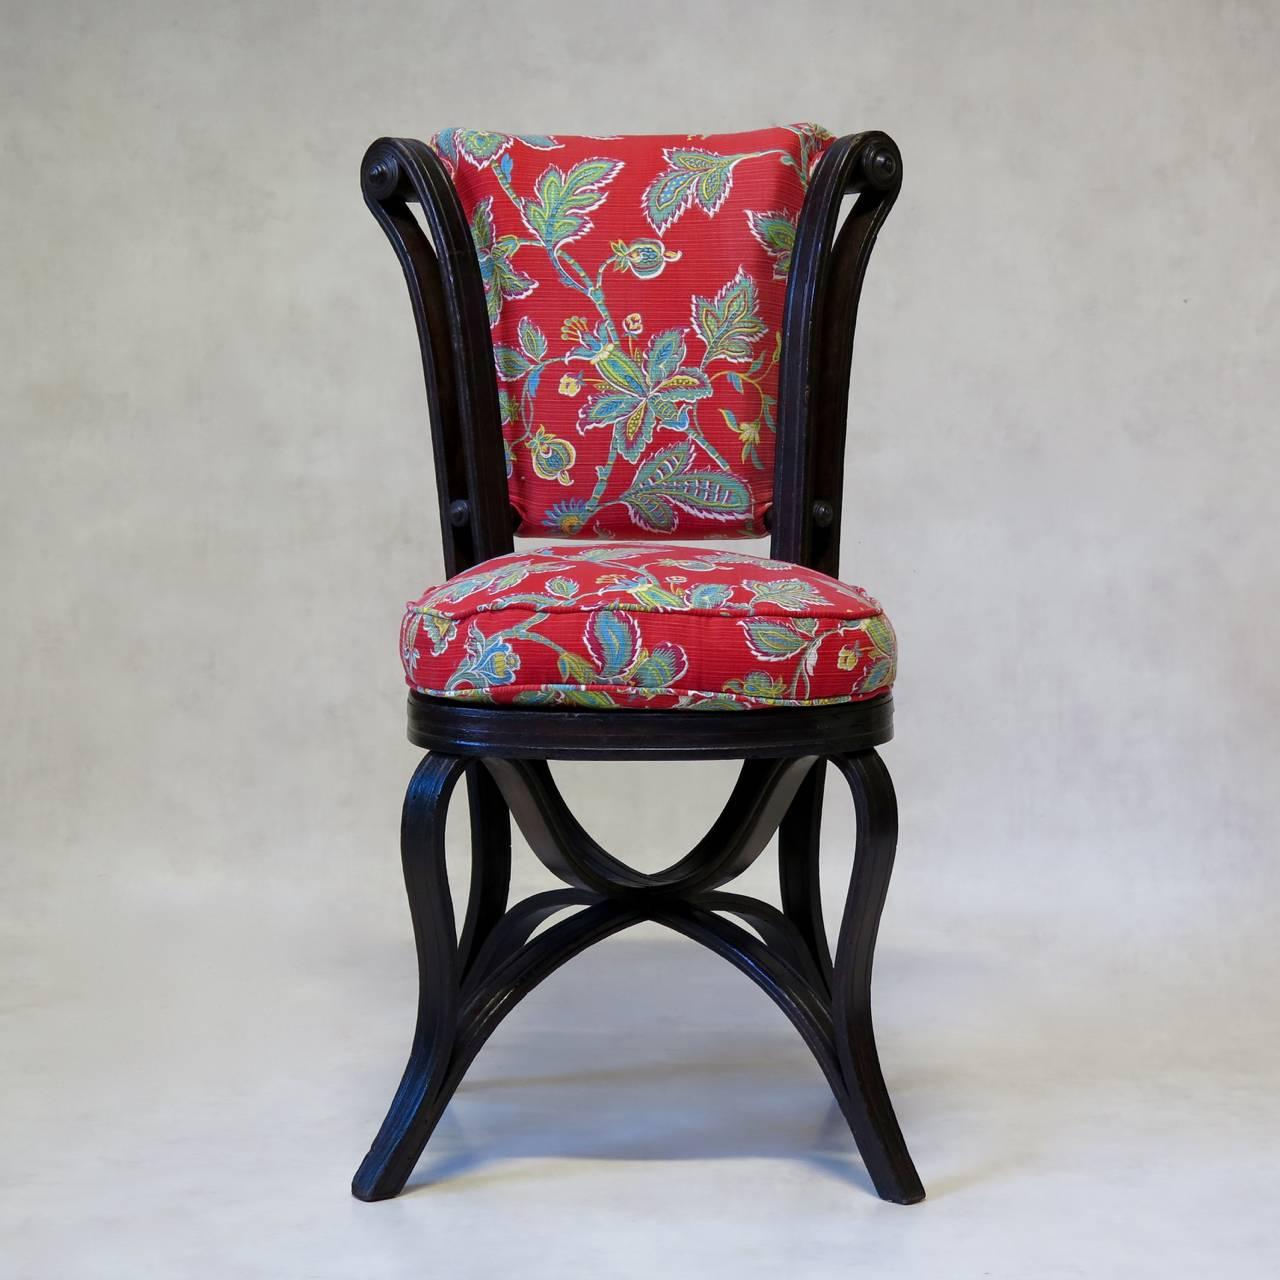 Seltenes und charmantes Paar antiker Bugholzstühle, möglicherweise von Thonet. 
Das Design des Stuhls ist genial und erzeugt eine schöne, fließende Bewegung: Der Stuhl ist so konstruiert, dass ein Stück Bugholz vom vorderen Fuß aus nach oben läuft,